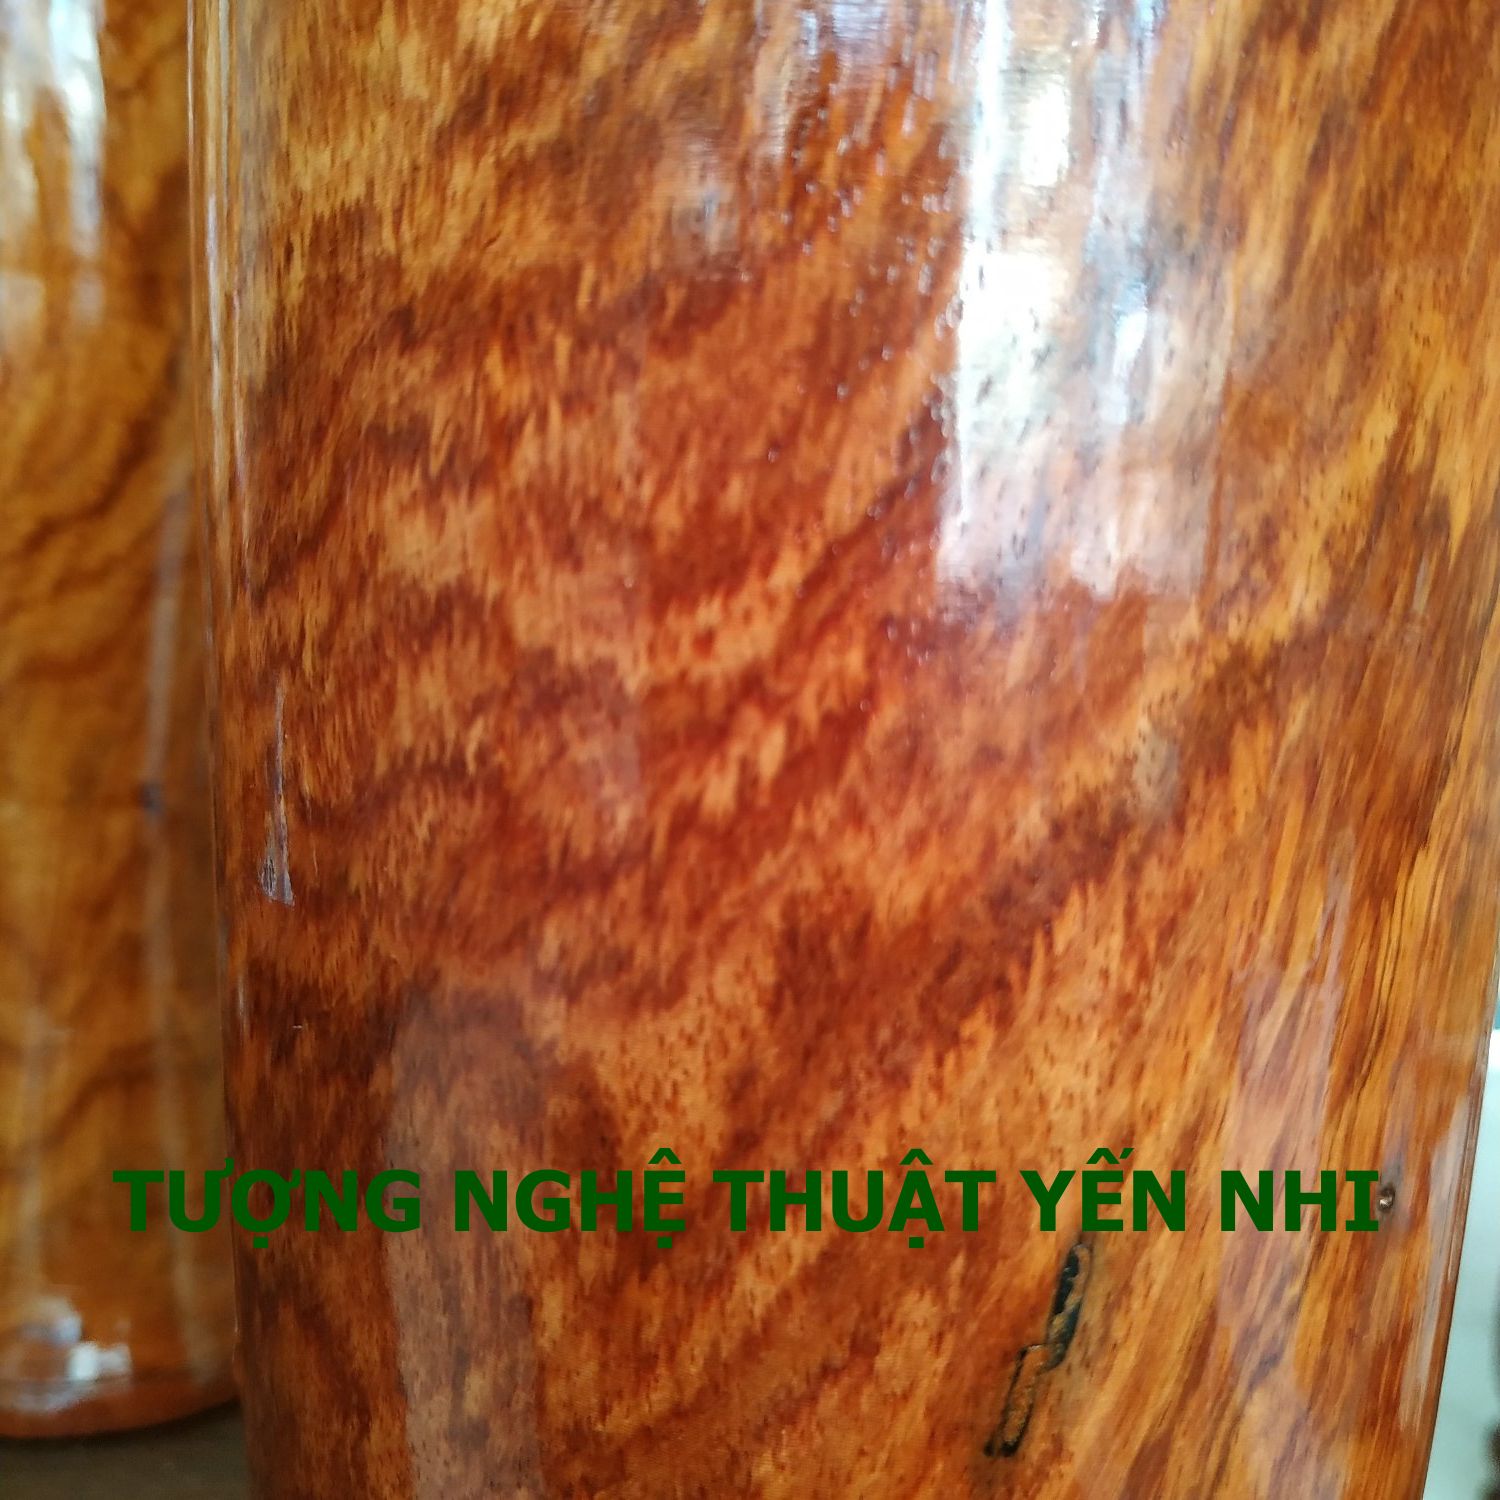 Cặp Lộc Bình Phong thủy gỗ Giáng Hương Căm Bốt cao 37cm, gỗ lõi vân đẹp, trưng bày làm quà tặng ý nghĩa, thu hút tài lộc may mắn